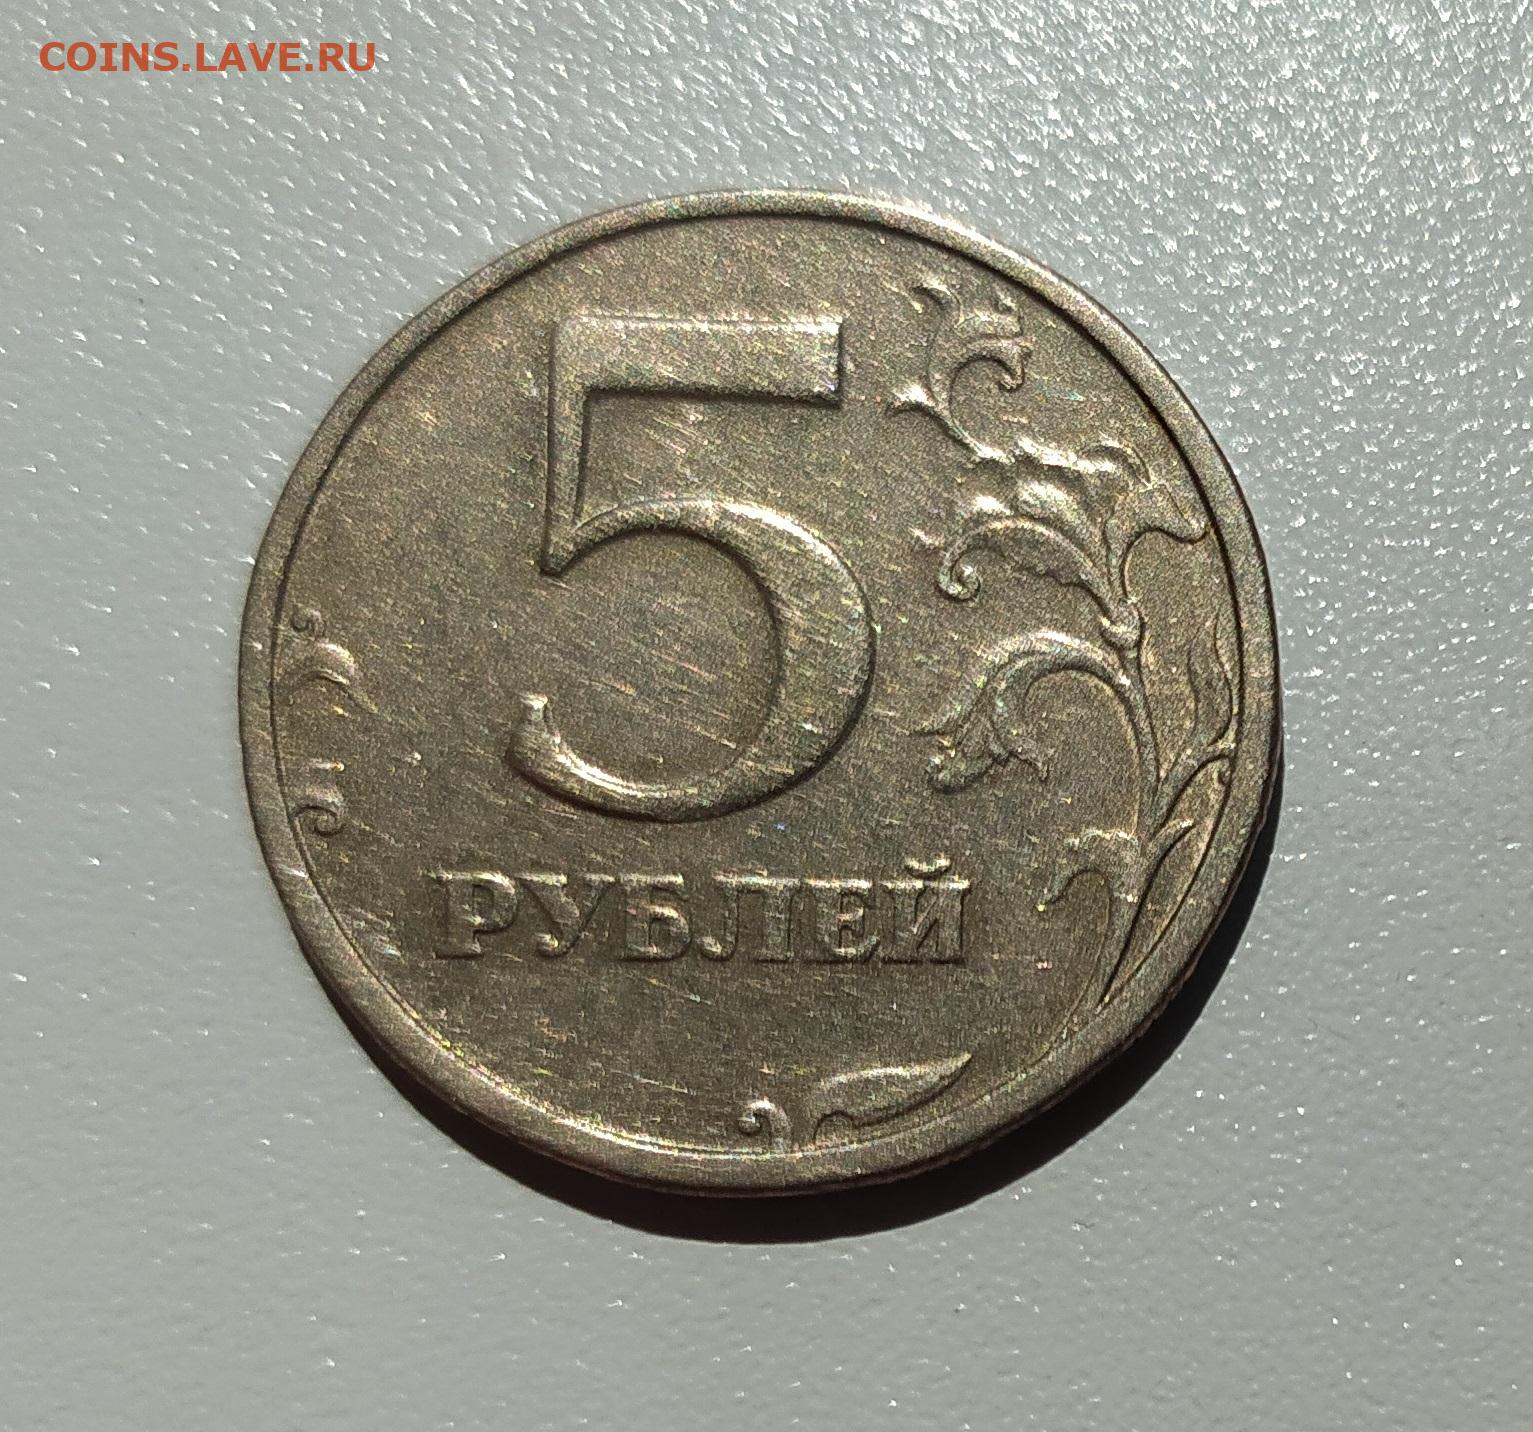 1 35 рублей. Двадцать пять рублей. Двадцать пять рублей латунь 2014. Купить рубль на аукционе 2003 года.